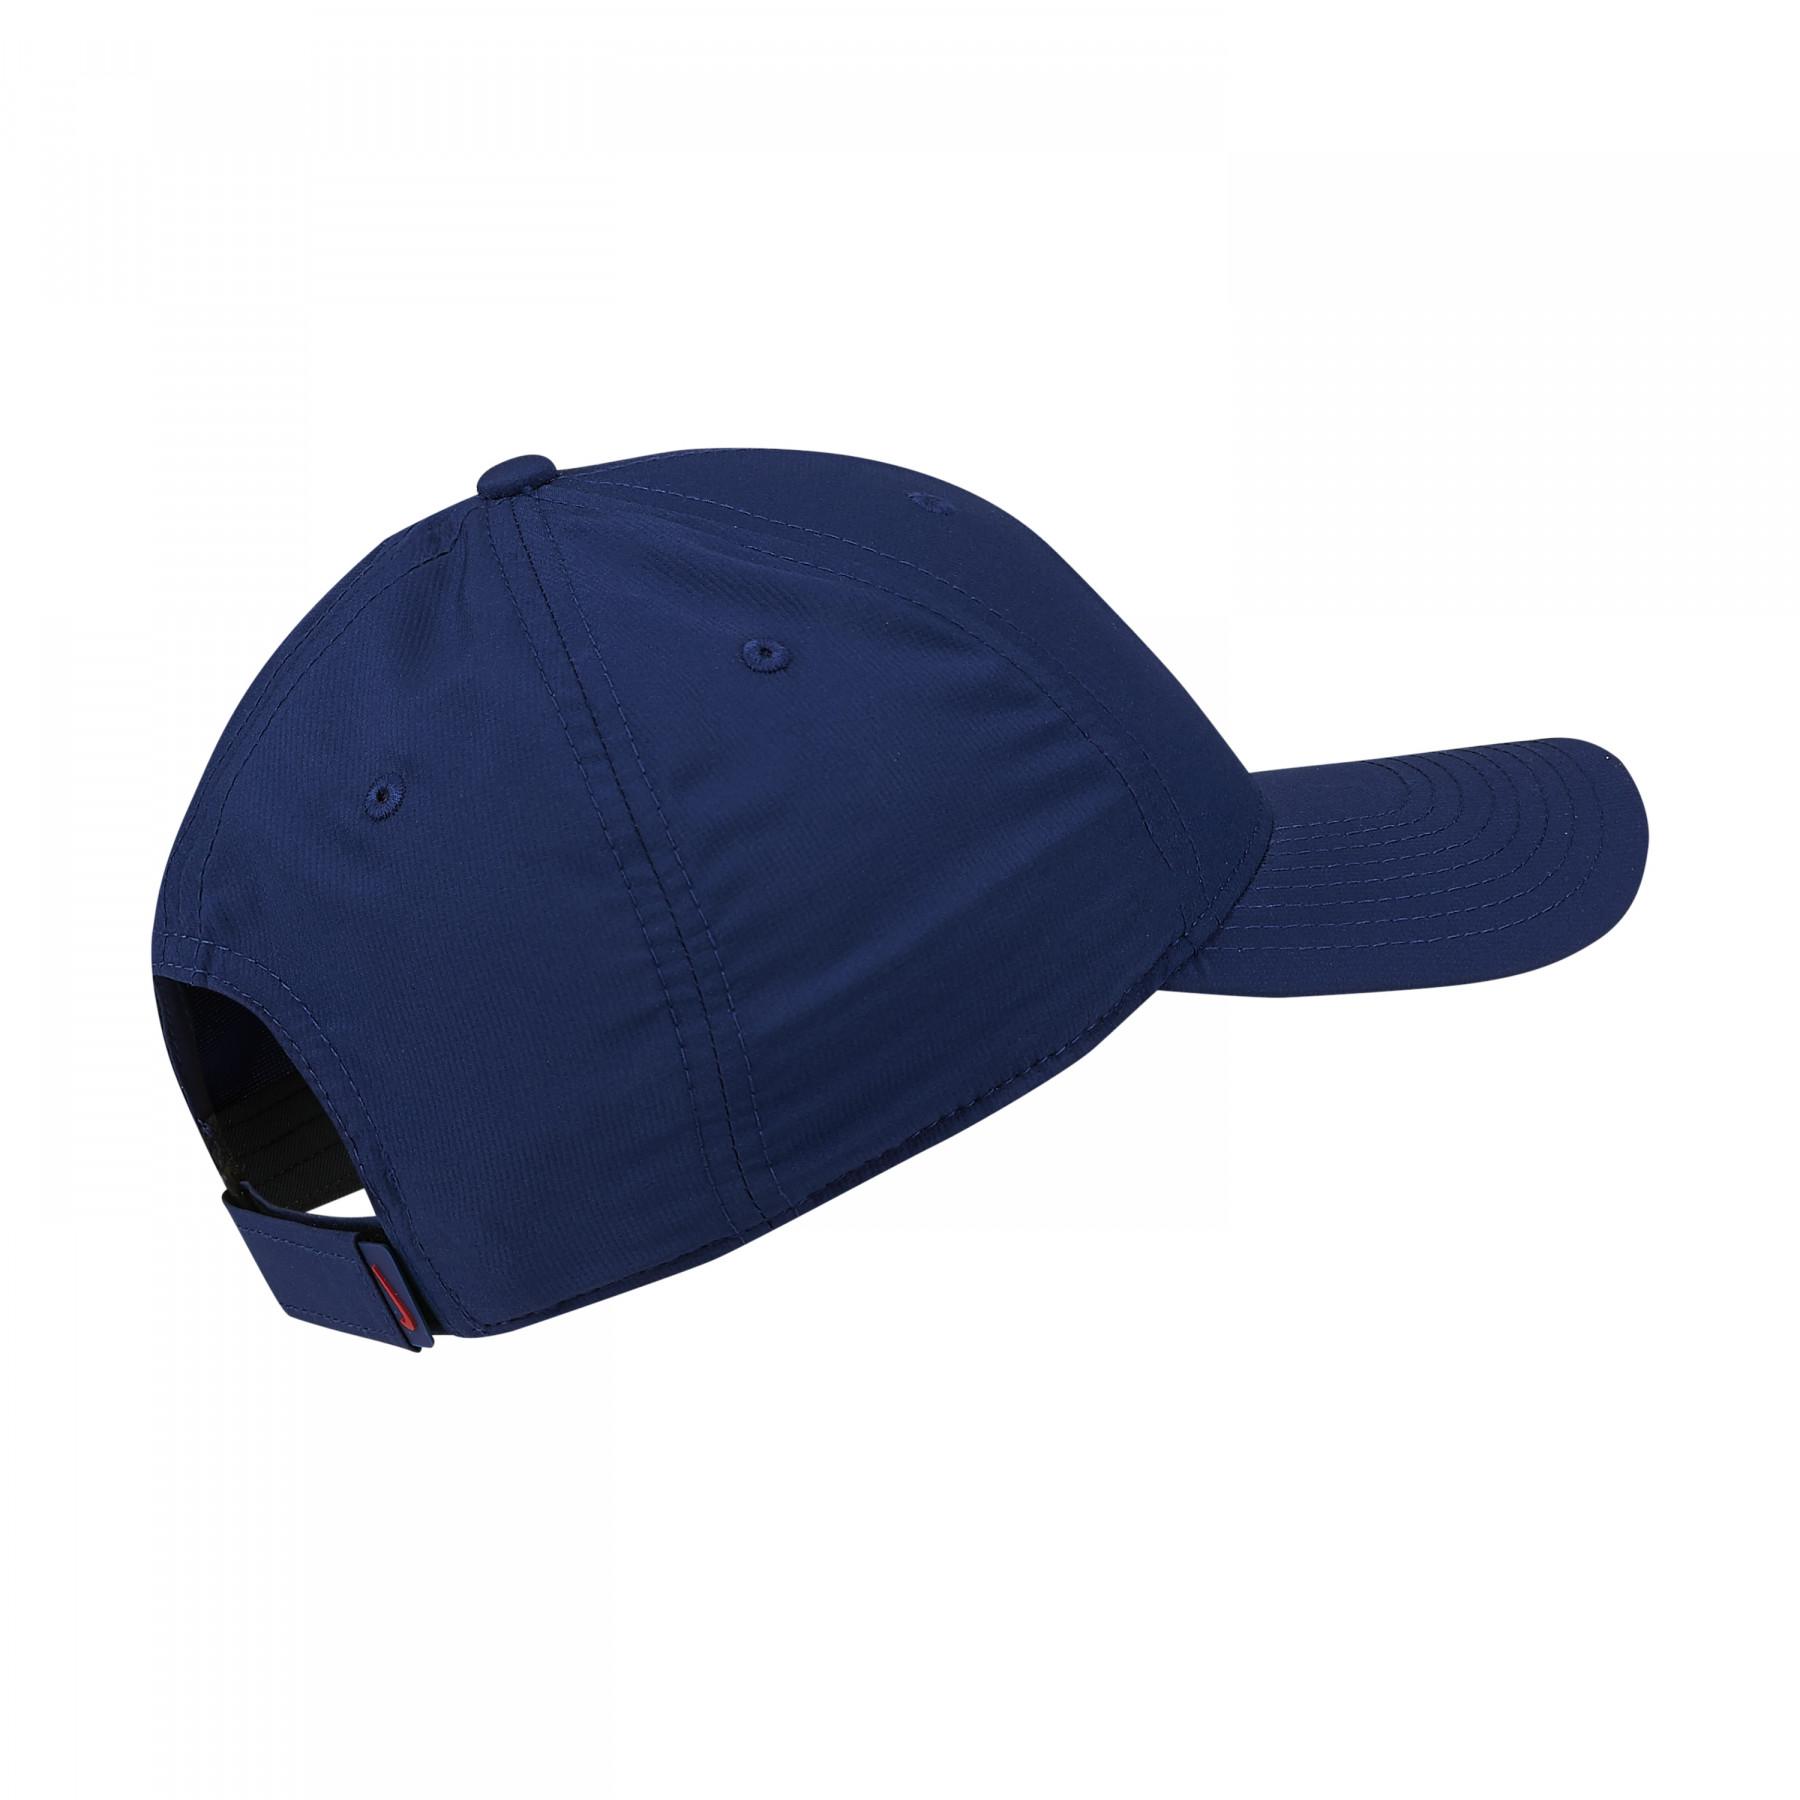 Adjustable child cap PSG dry L91